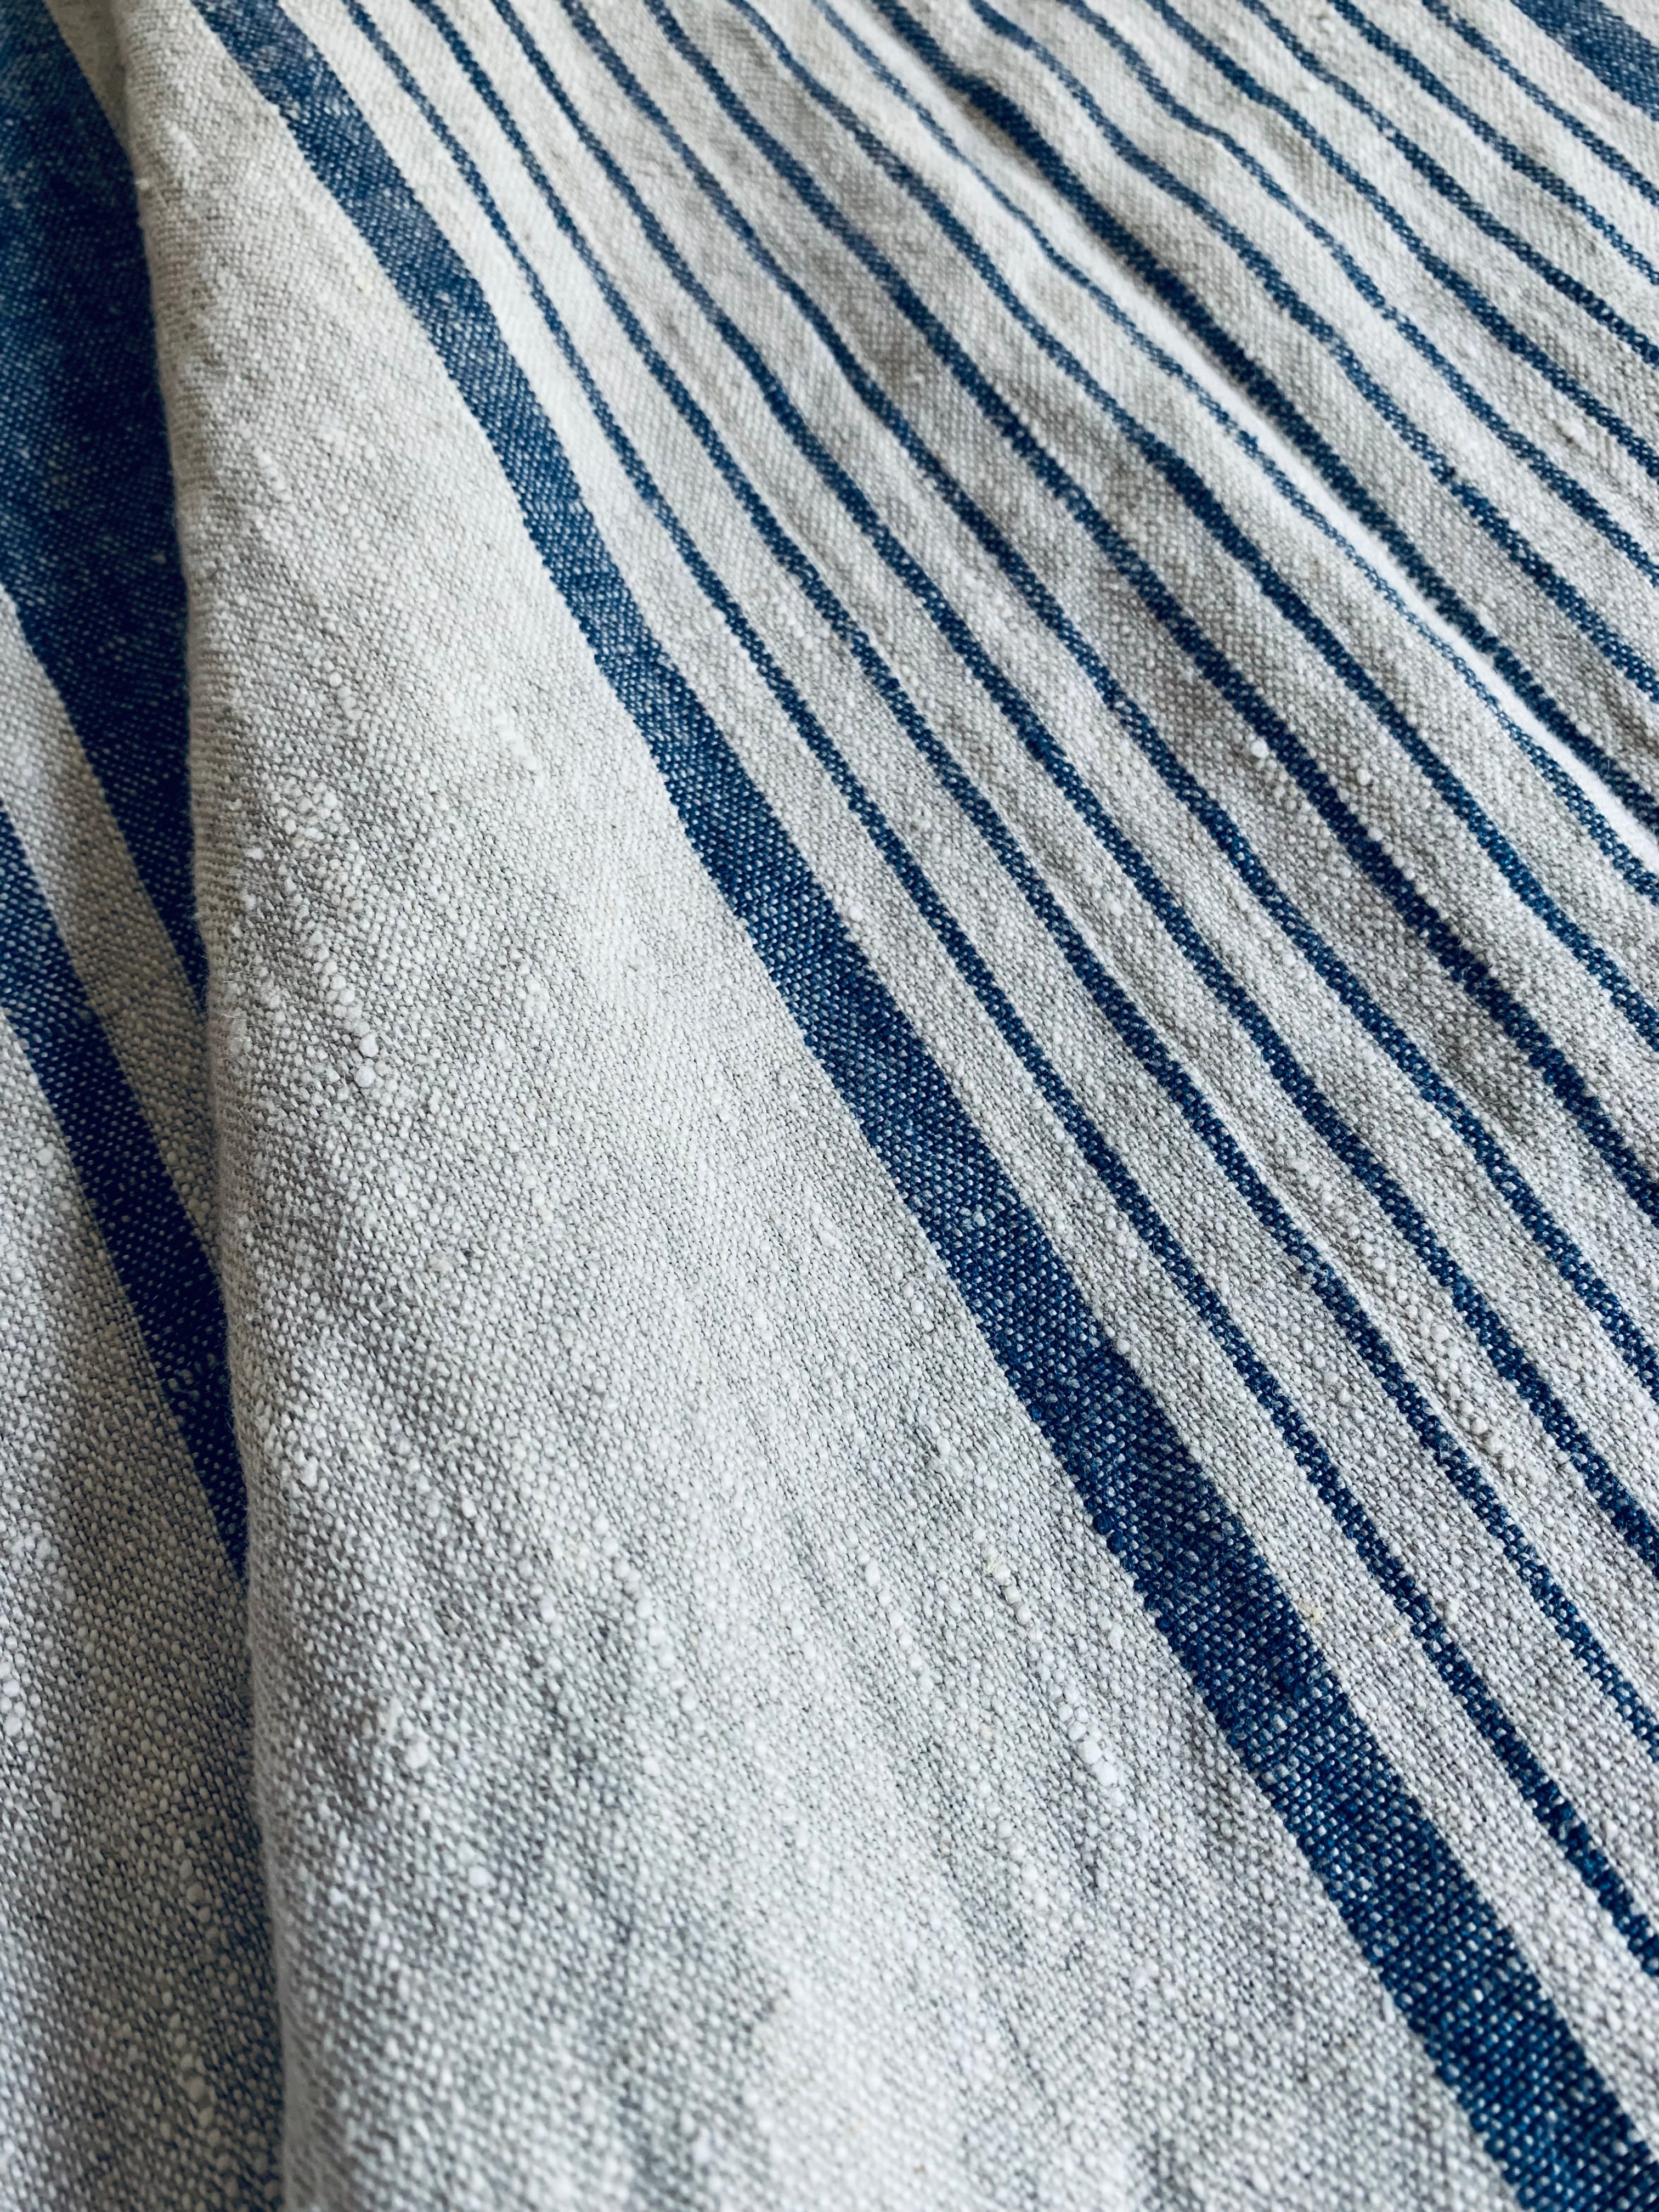 Blue Stripes - extra breites und weiches Sackleinen